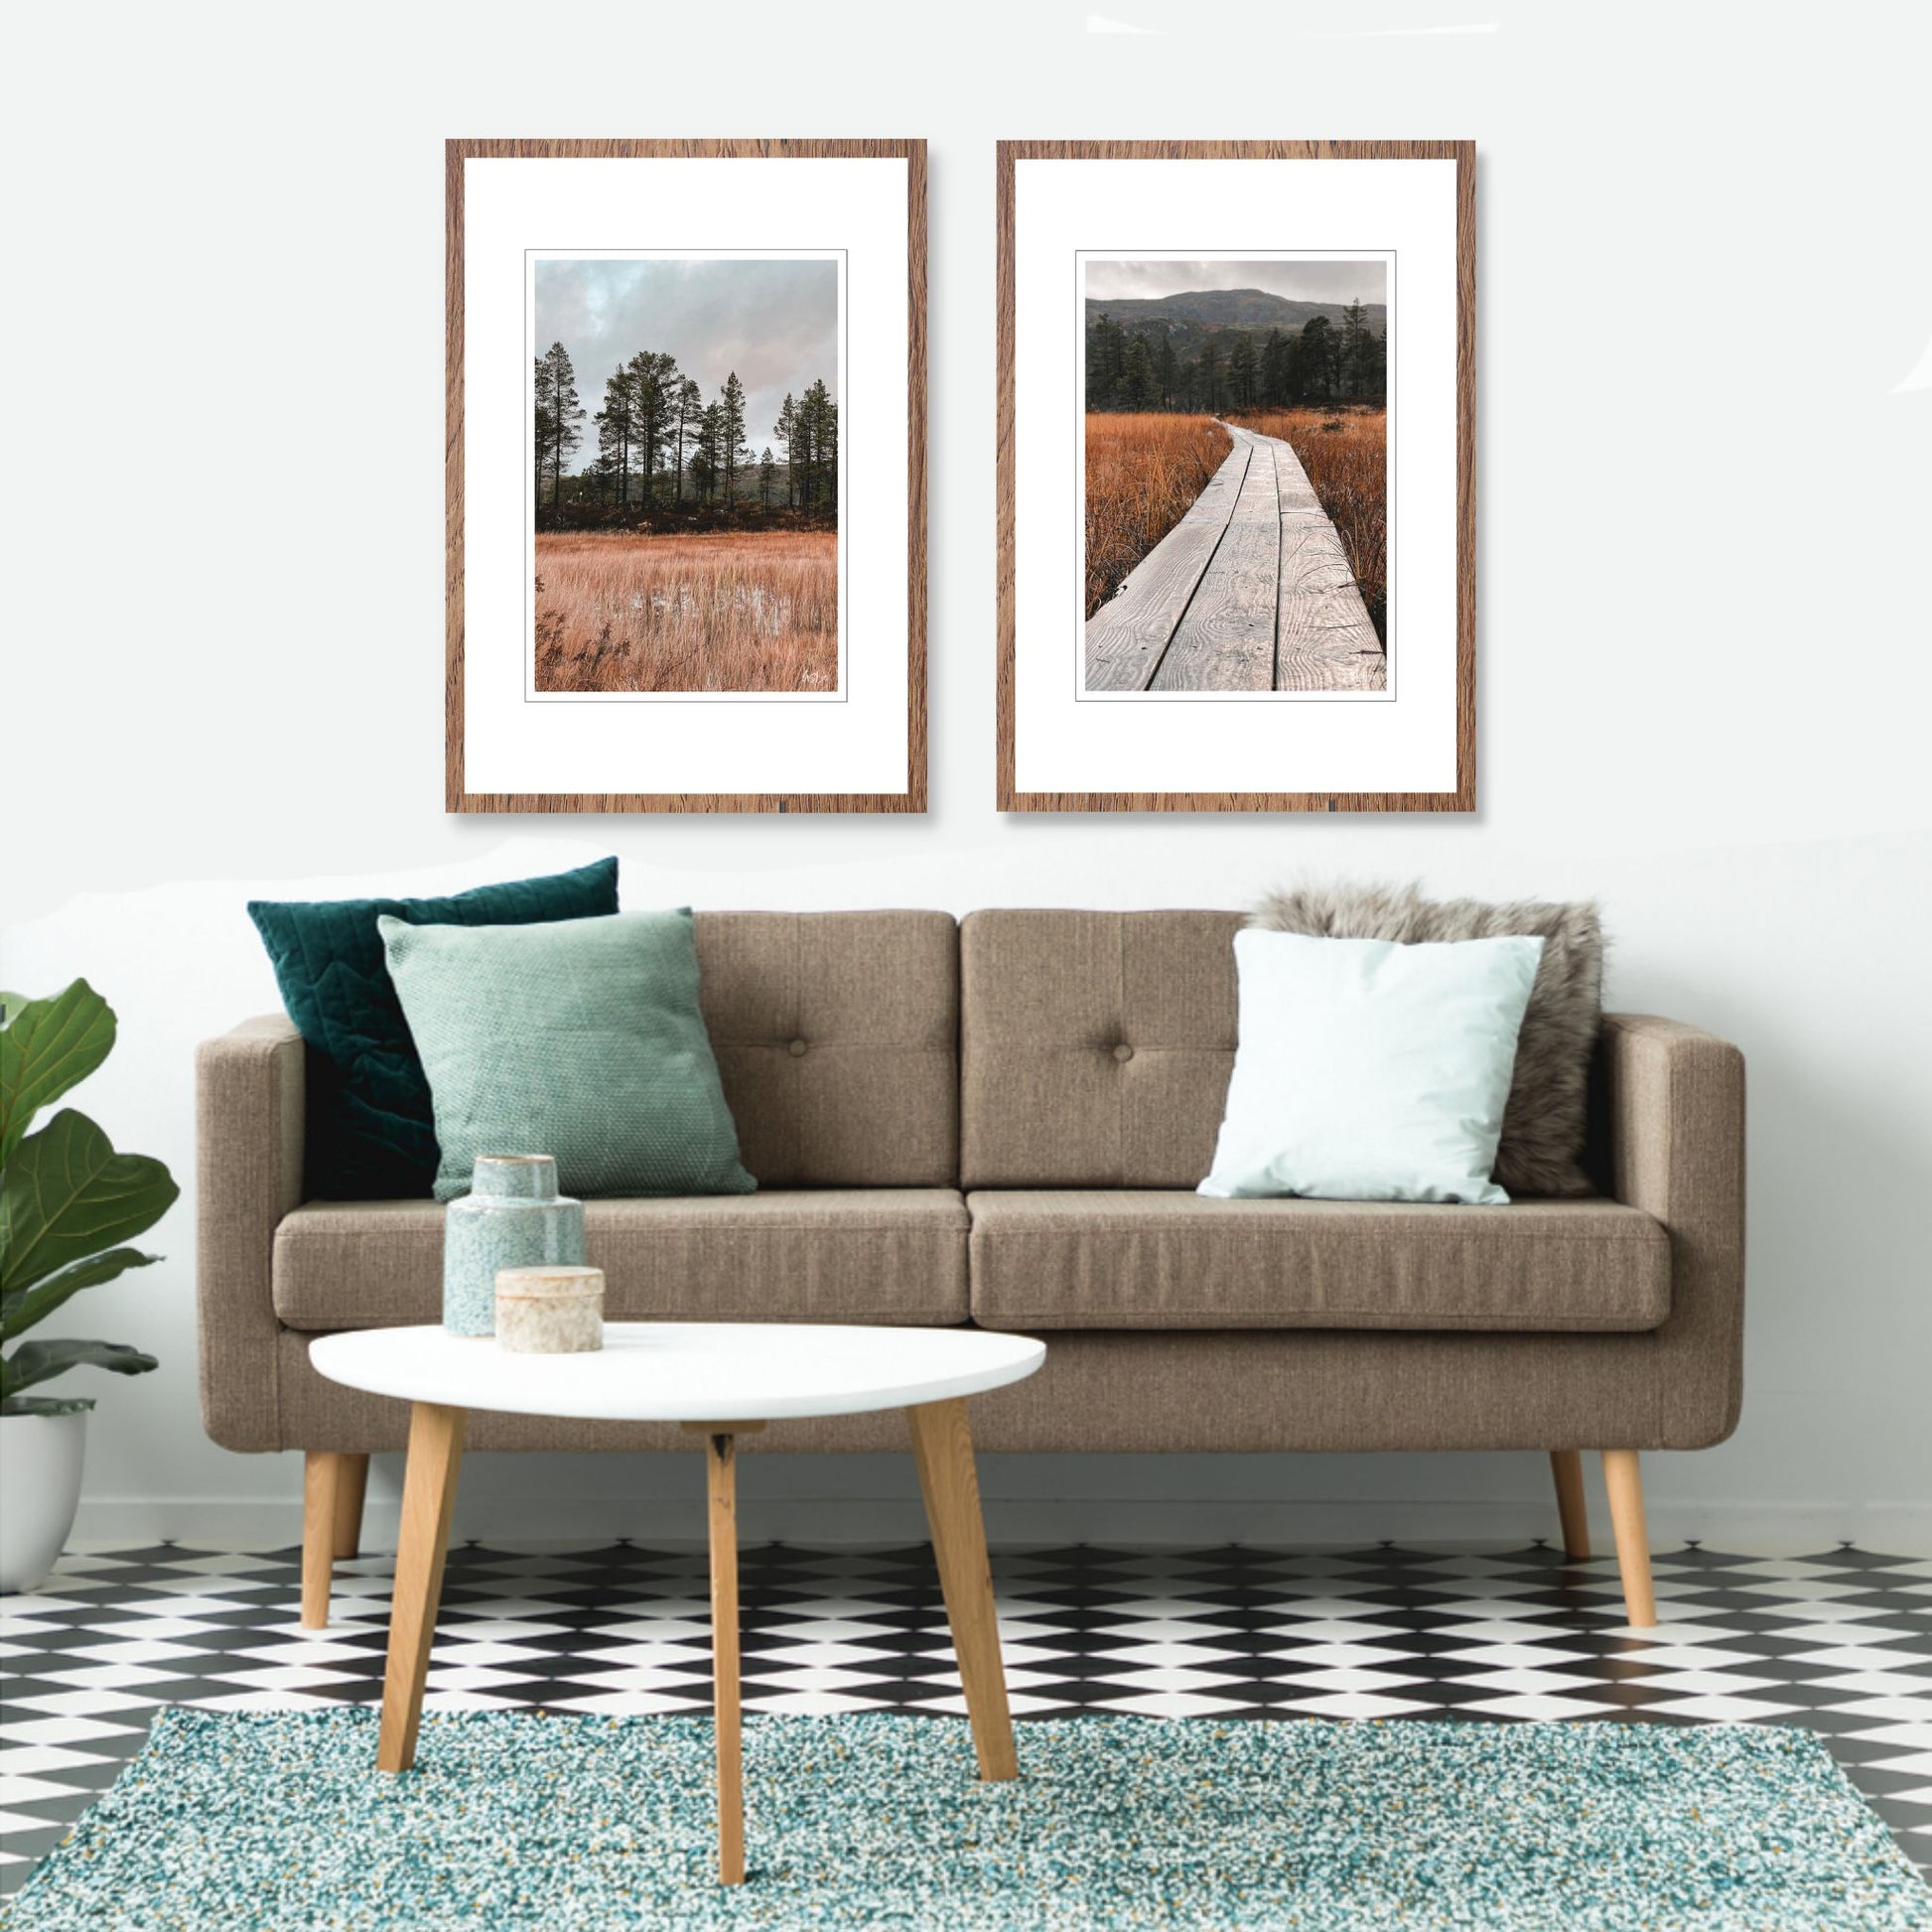 Ta naturen inn i rommet med plakat av norsk natur! Nå kan du dekorere veggen din med høstbilder fra Fergeli i Trøndelag. Her henger to bilder fra Fergelig på en en vegg over en sofa.